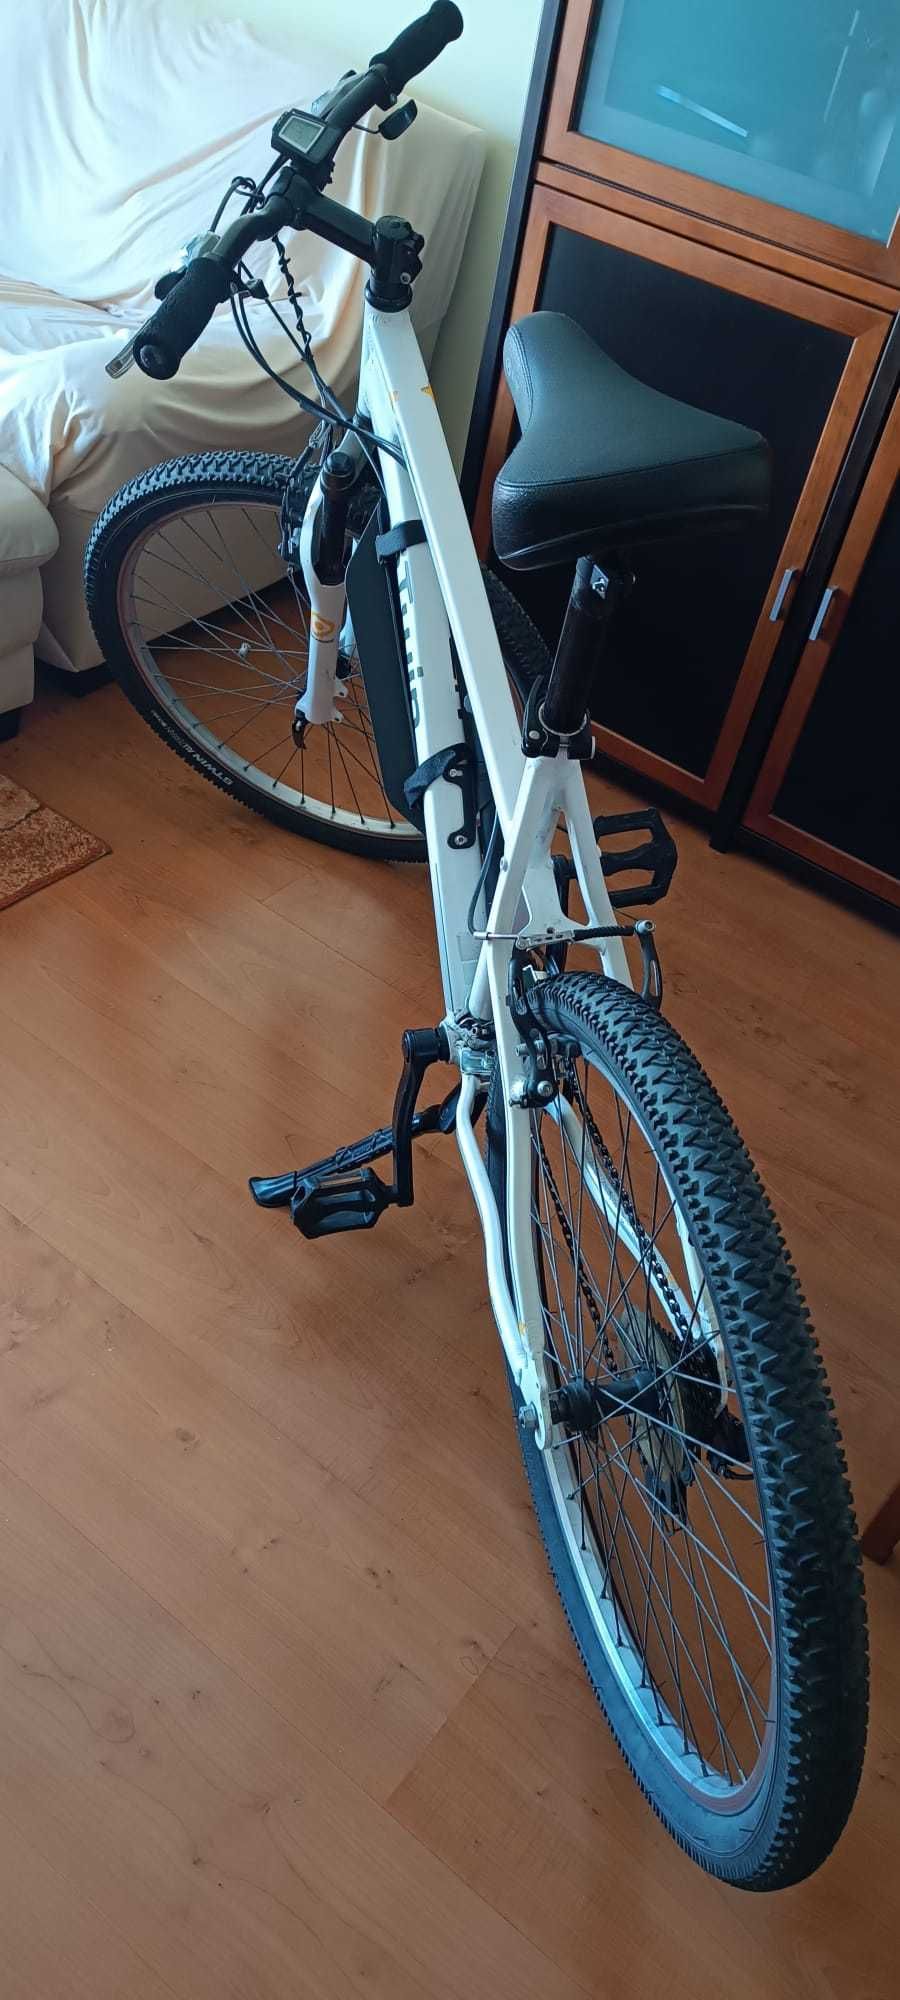 Bicicleta Rockrider 5.1  com accesorios inclusos